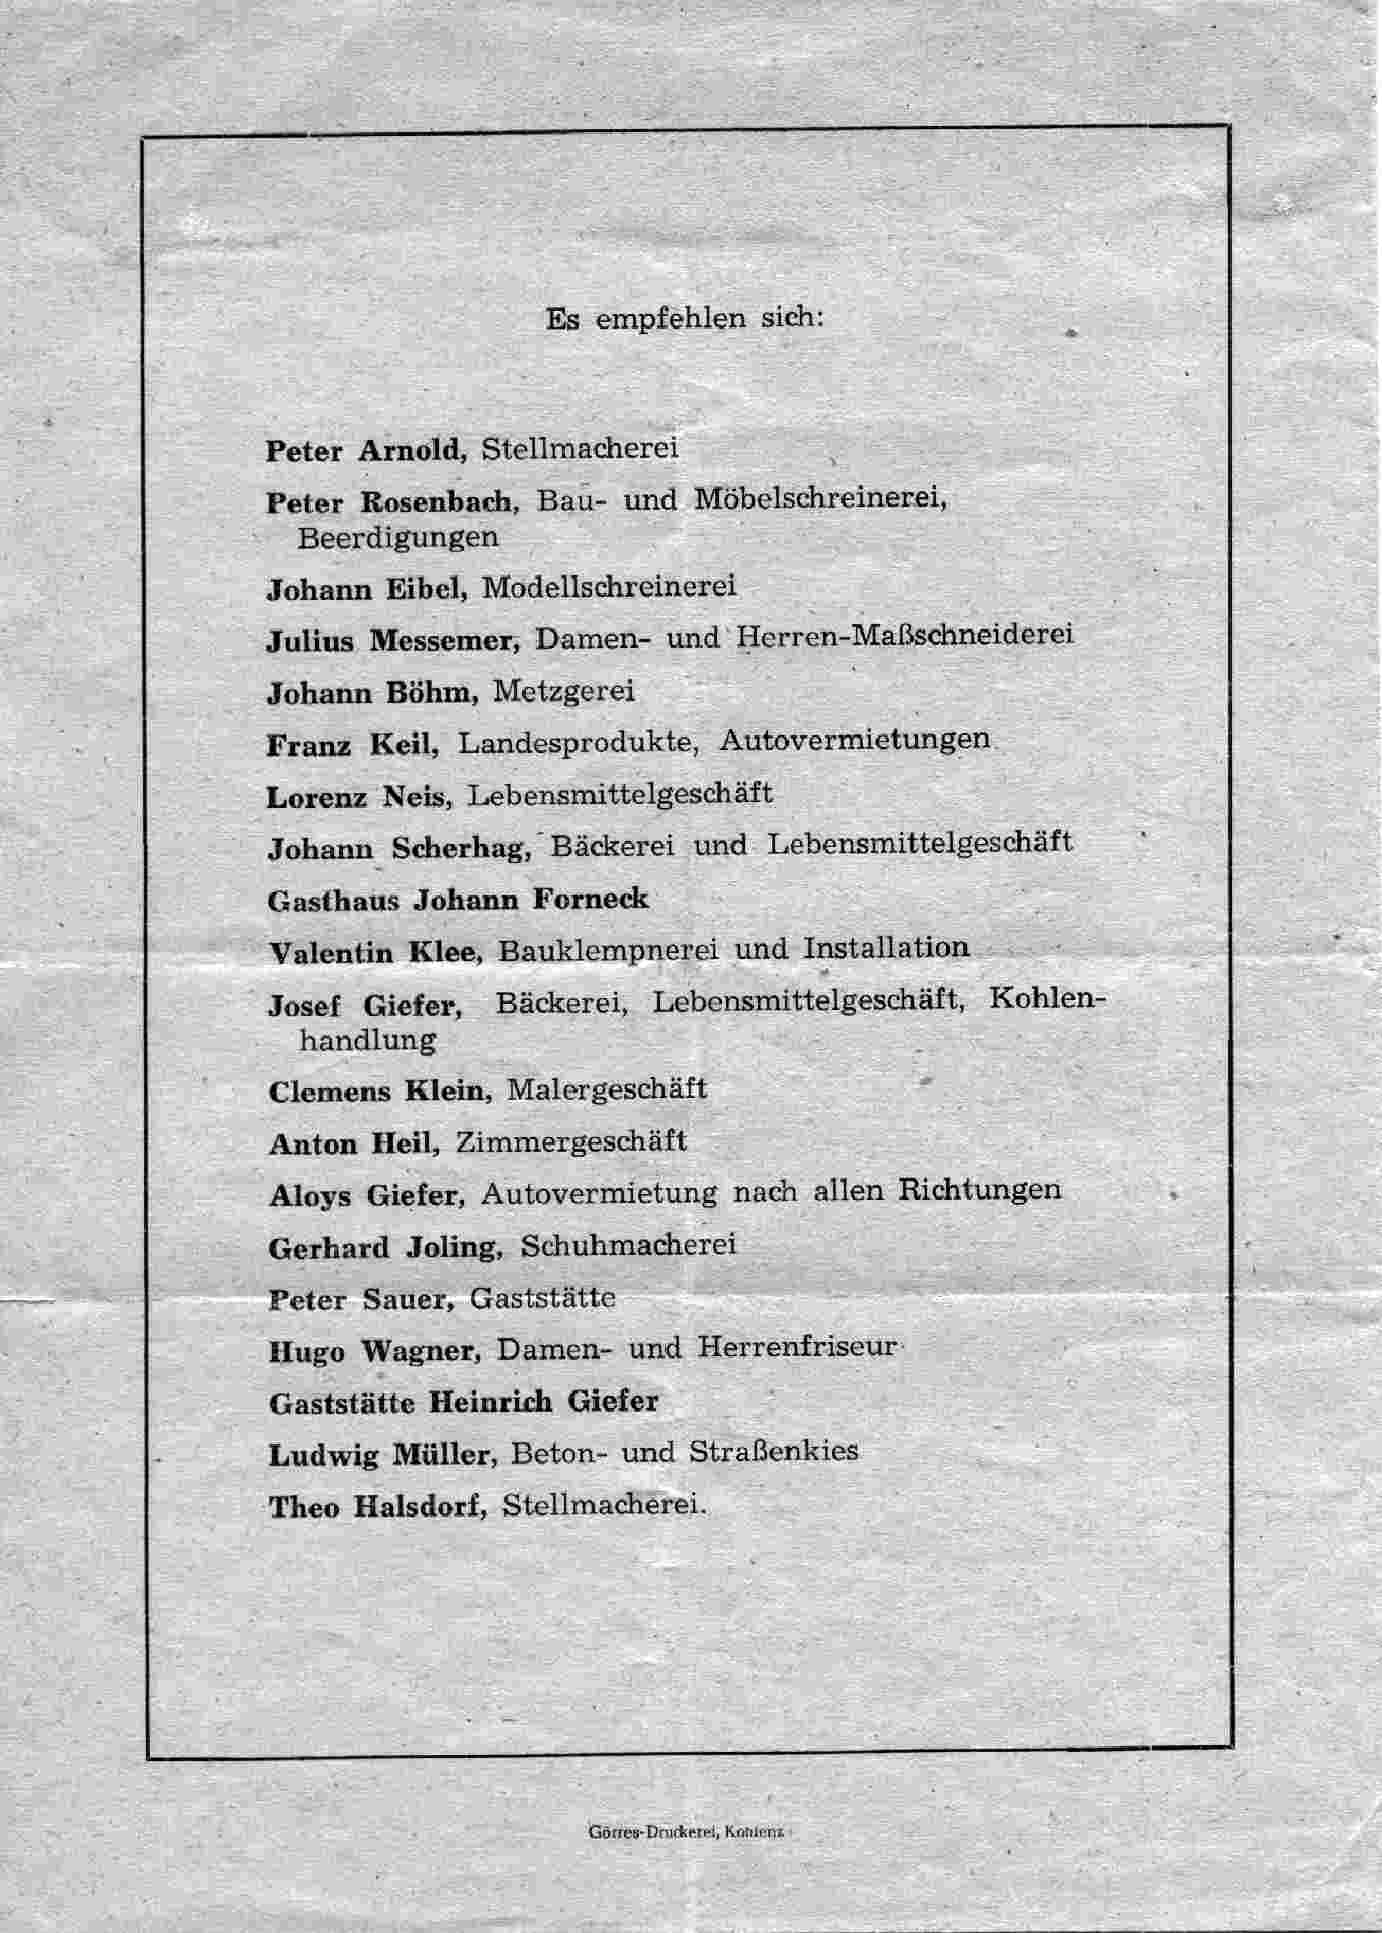 Sponsoren Stiftungsfest 50 Jahre im Jahre 1949 